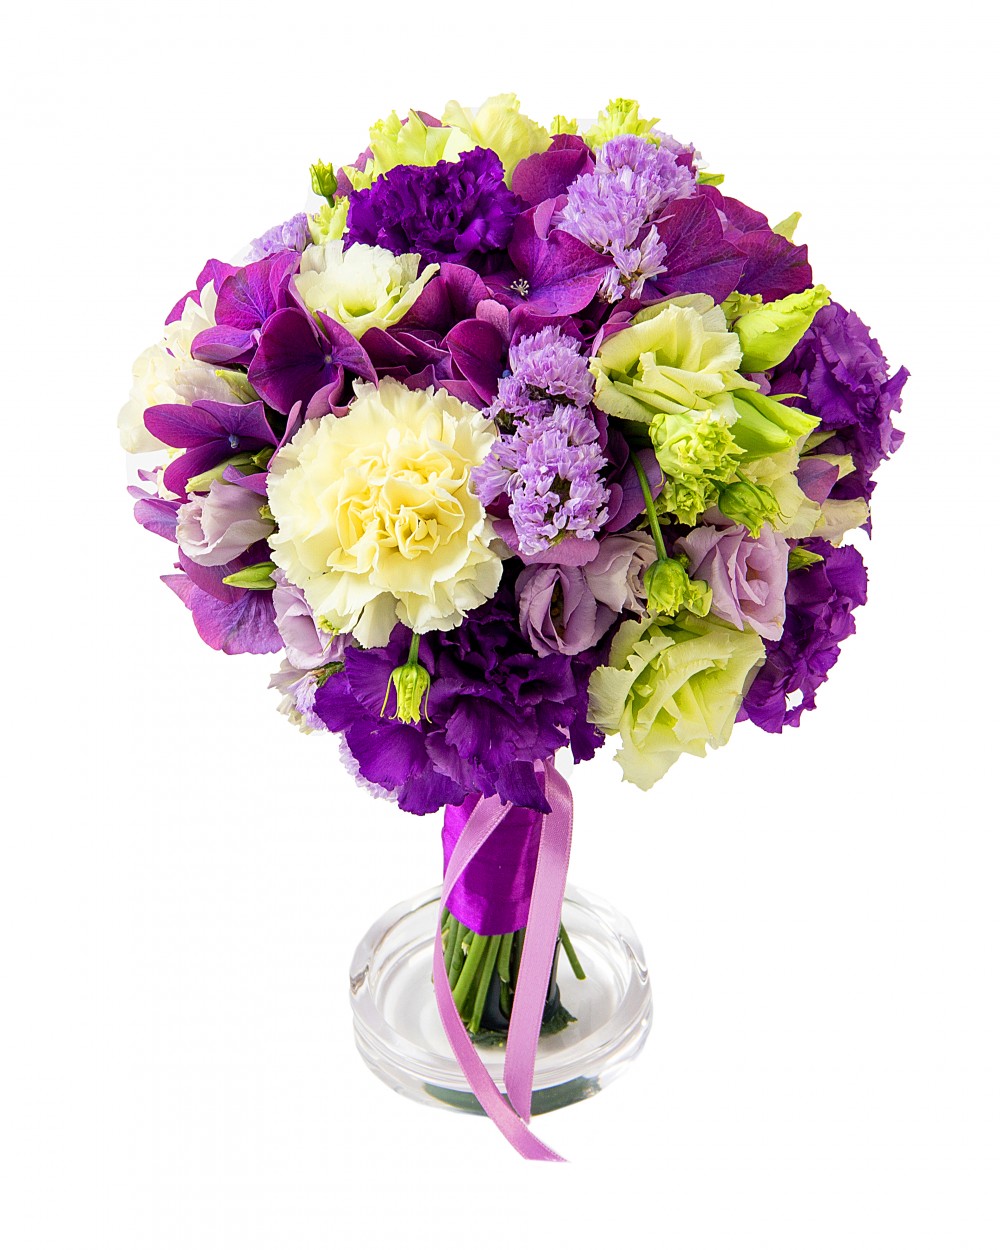 Изображение Свадебный букет шаровидный под фиолетовую стилистику свадьбы. Собираем букеты под вашу стилистику. Под цвет, тон, стиль празднования